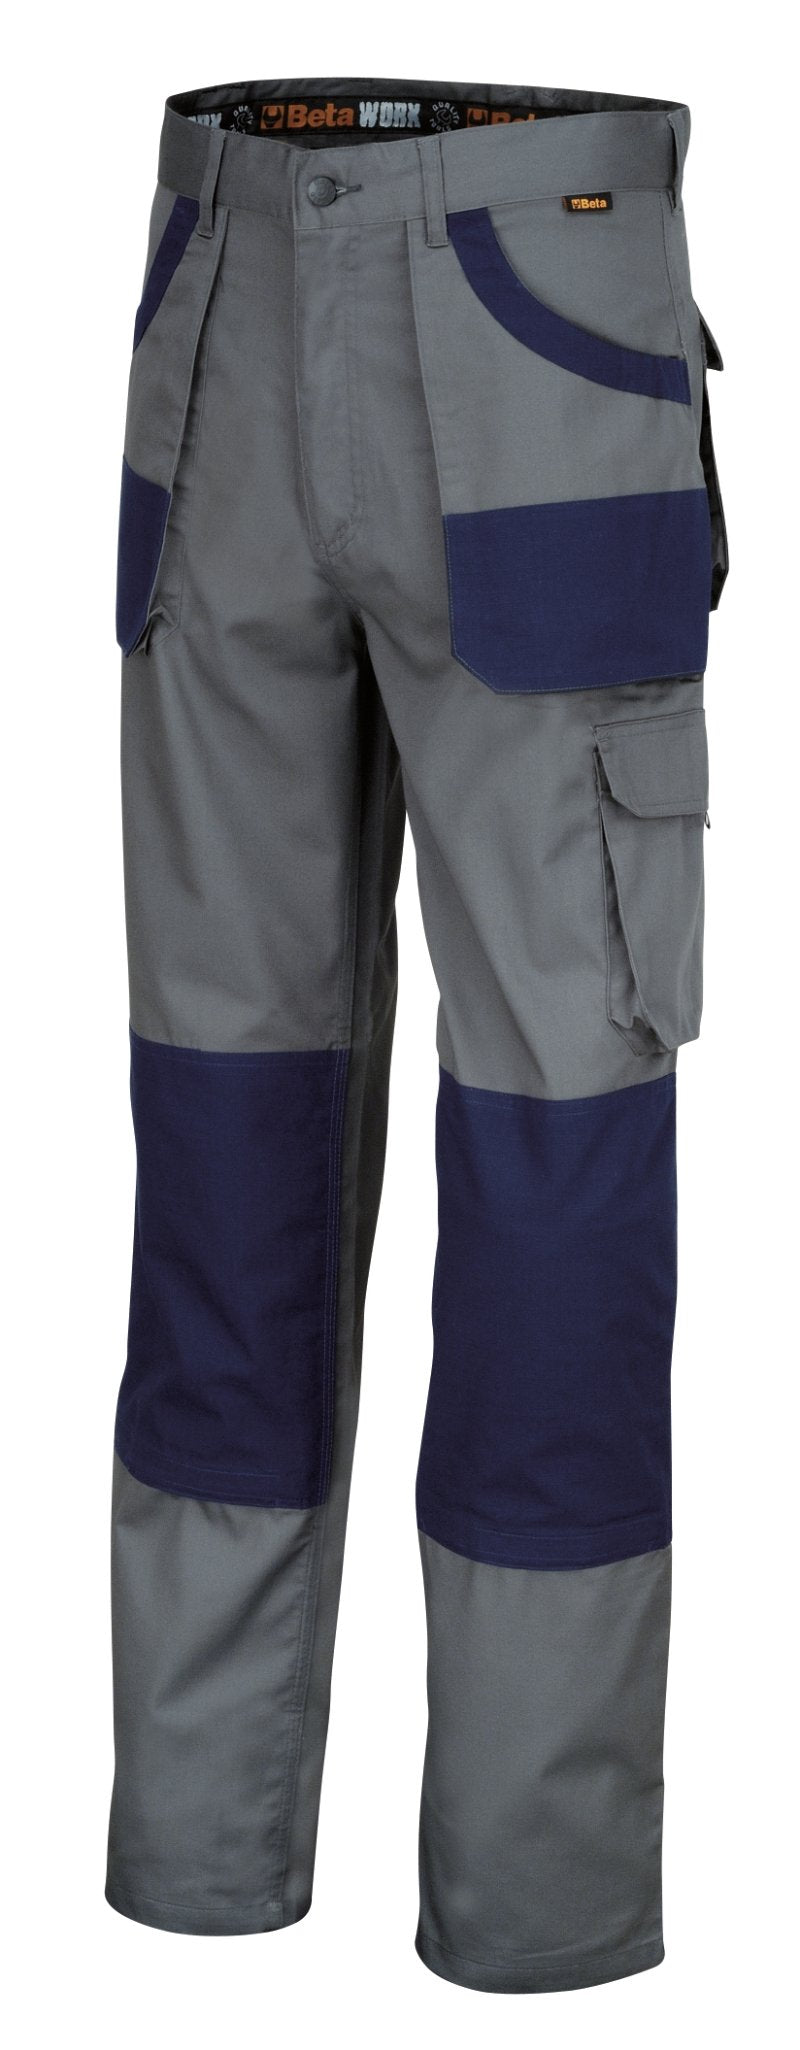 7860 GB/XXXL - Work Trousers Twill Grey